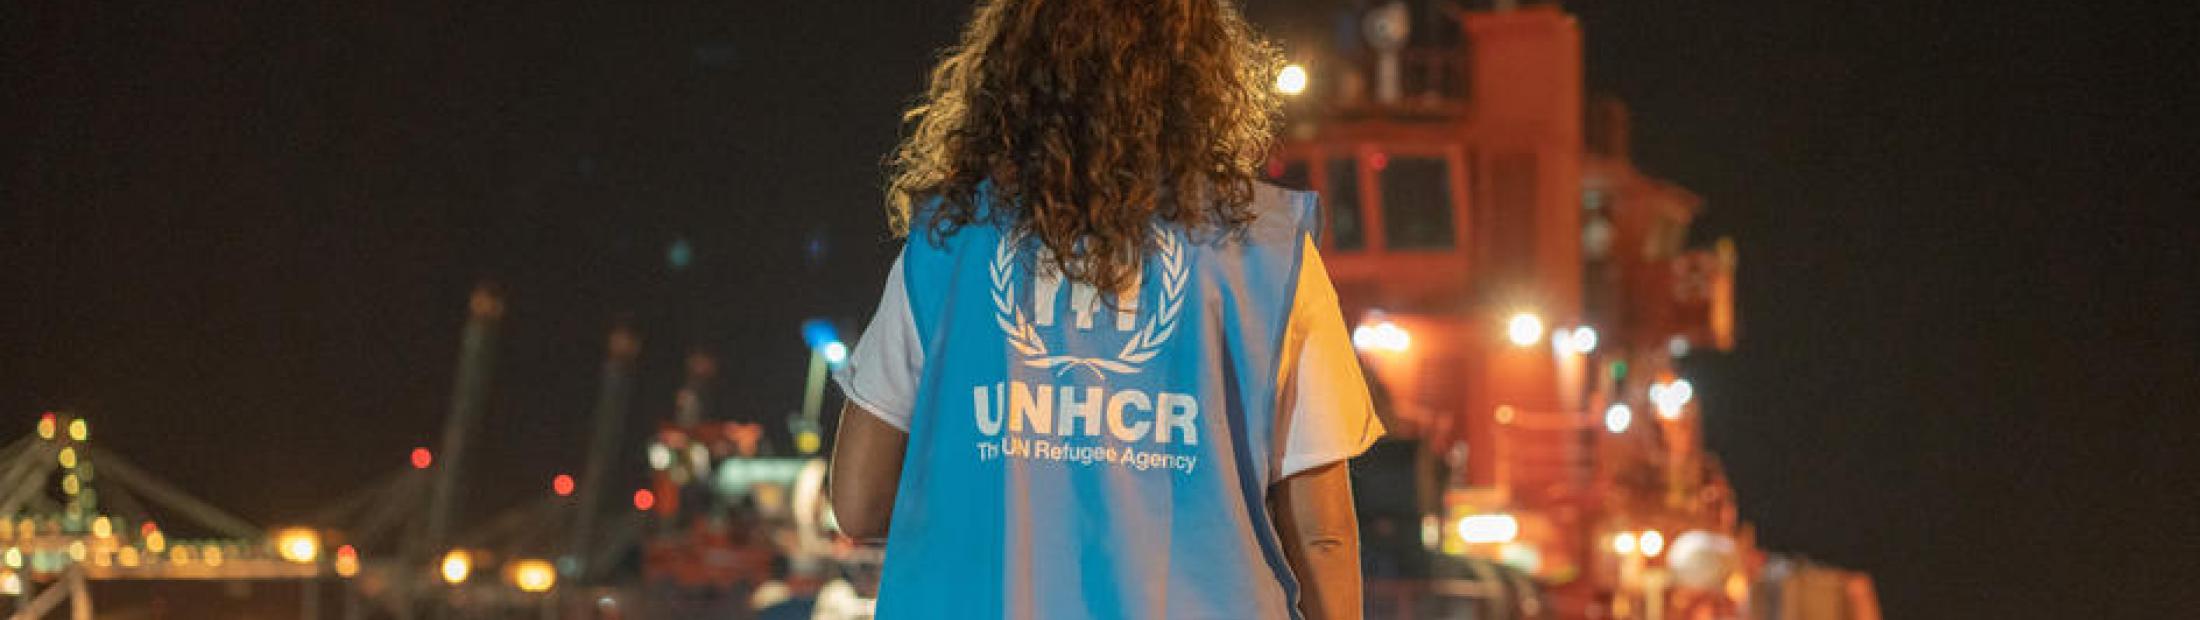 El Comité español de ACNUR, la ONG en España que apoya la labor de ACNUR con los refugiados